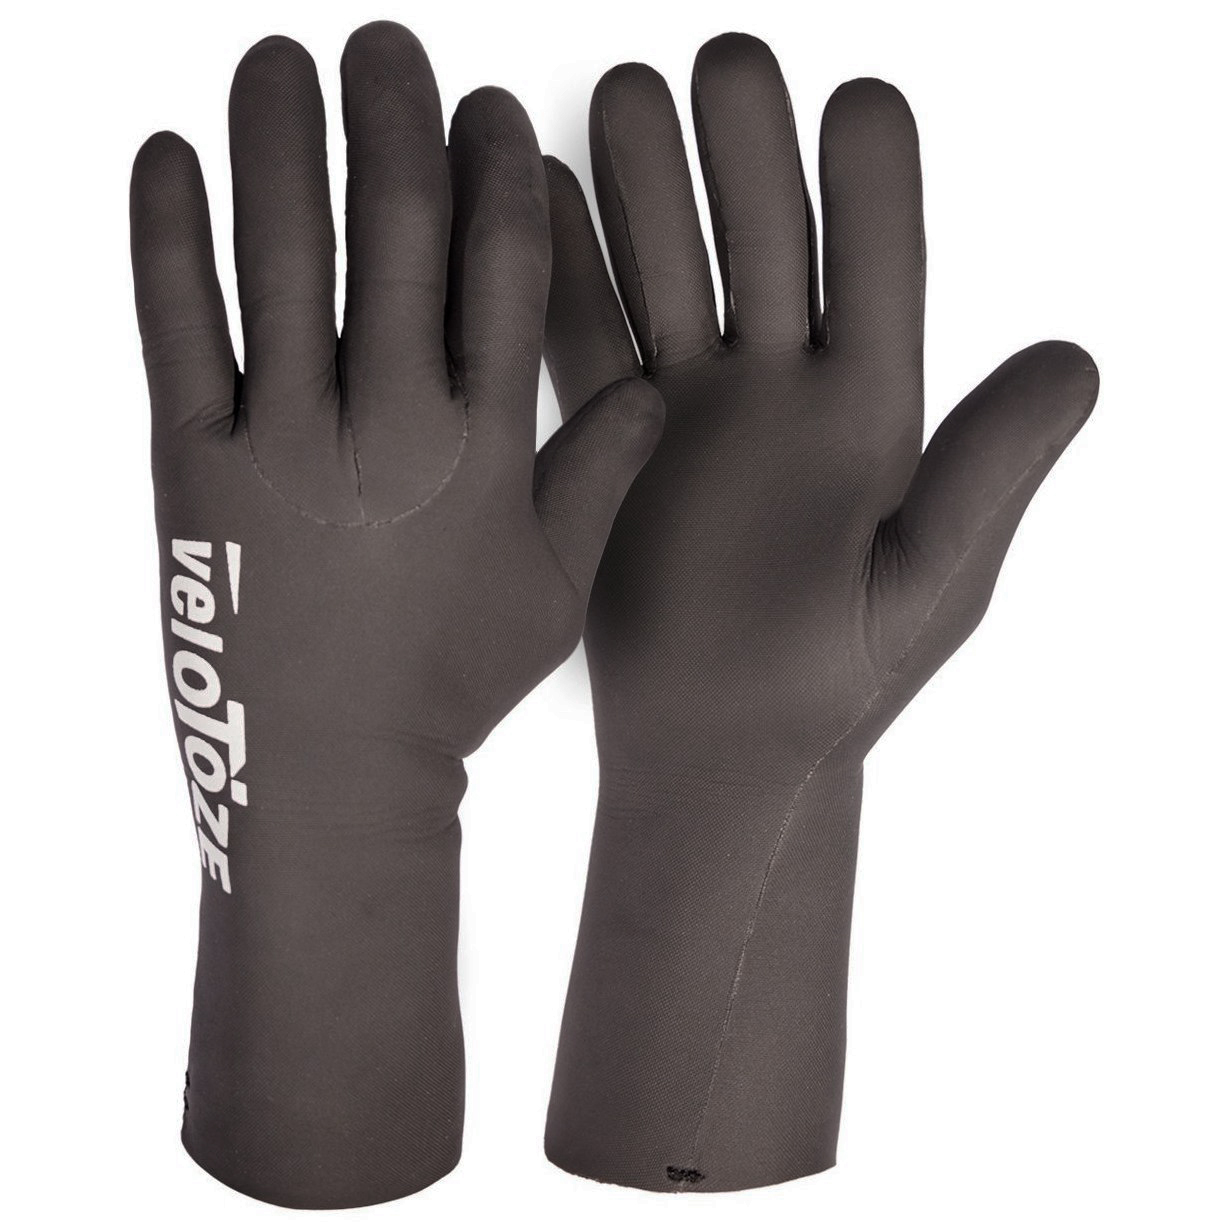 Productfoto van veloToze Waterproof Cycling Glove - black